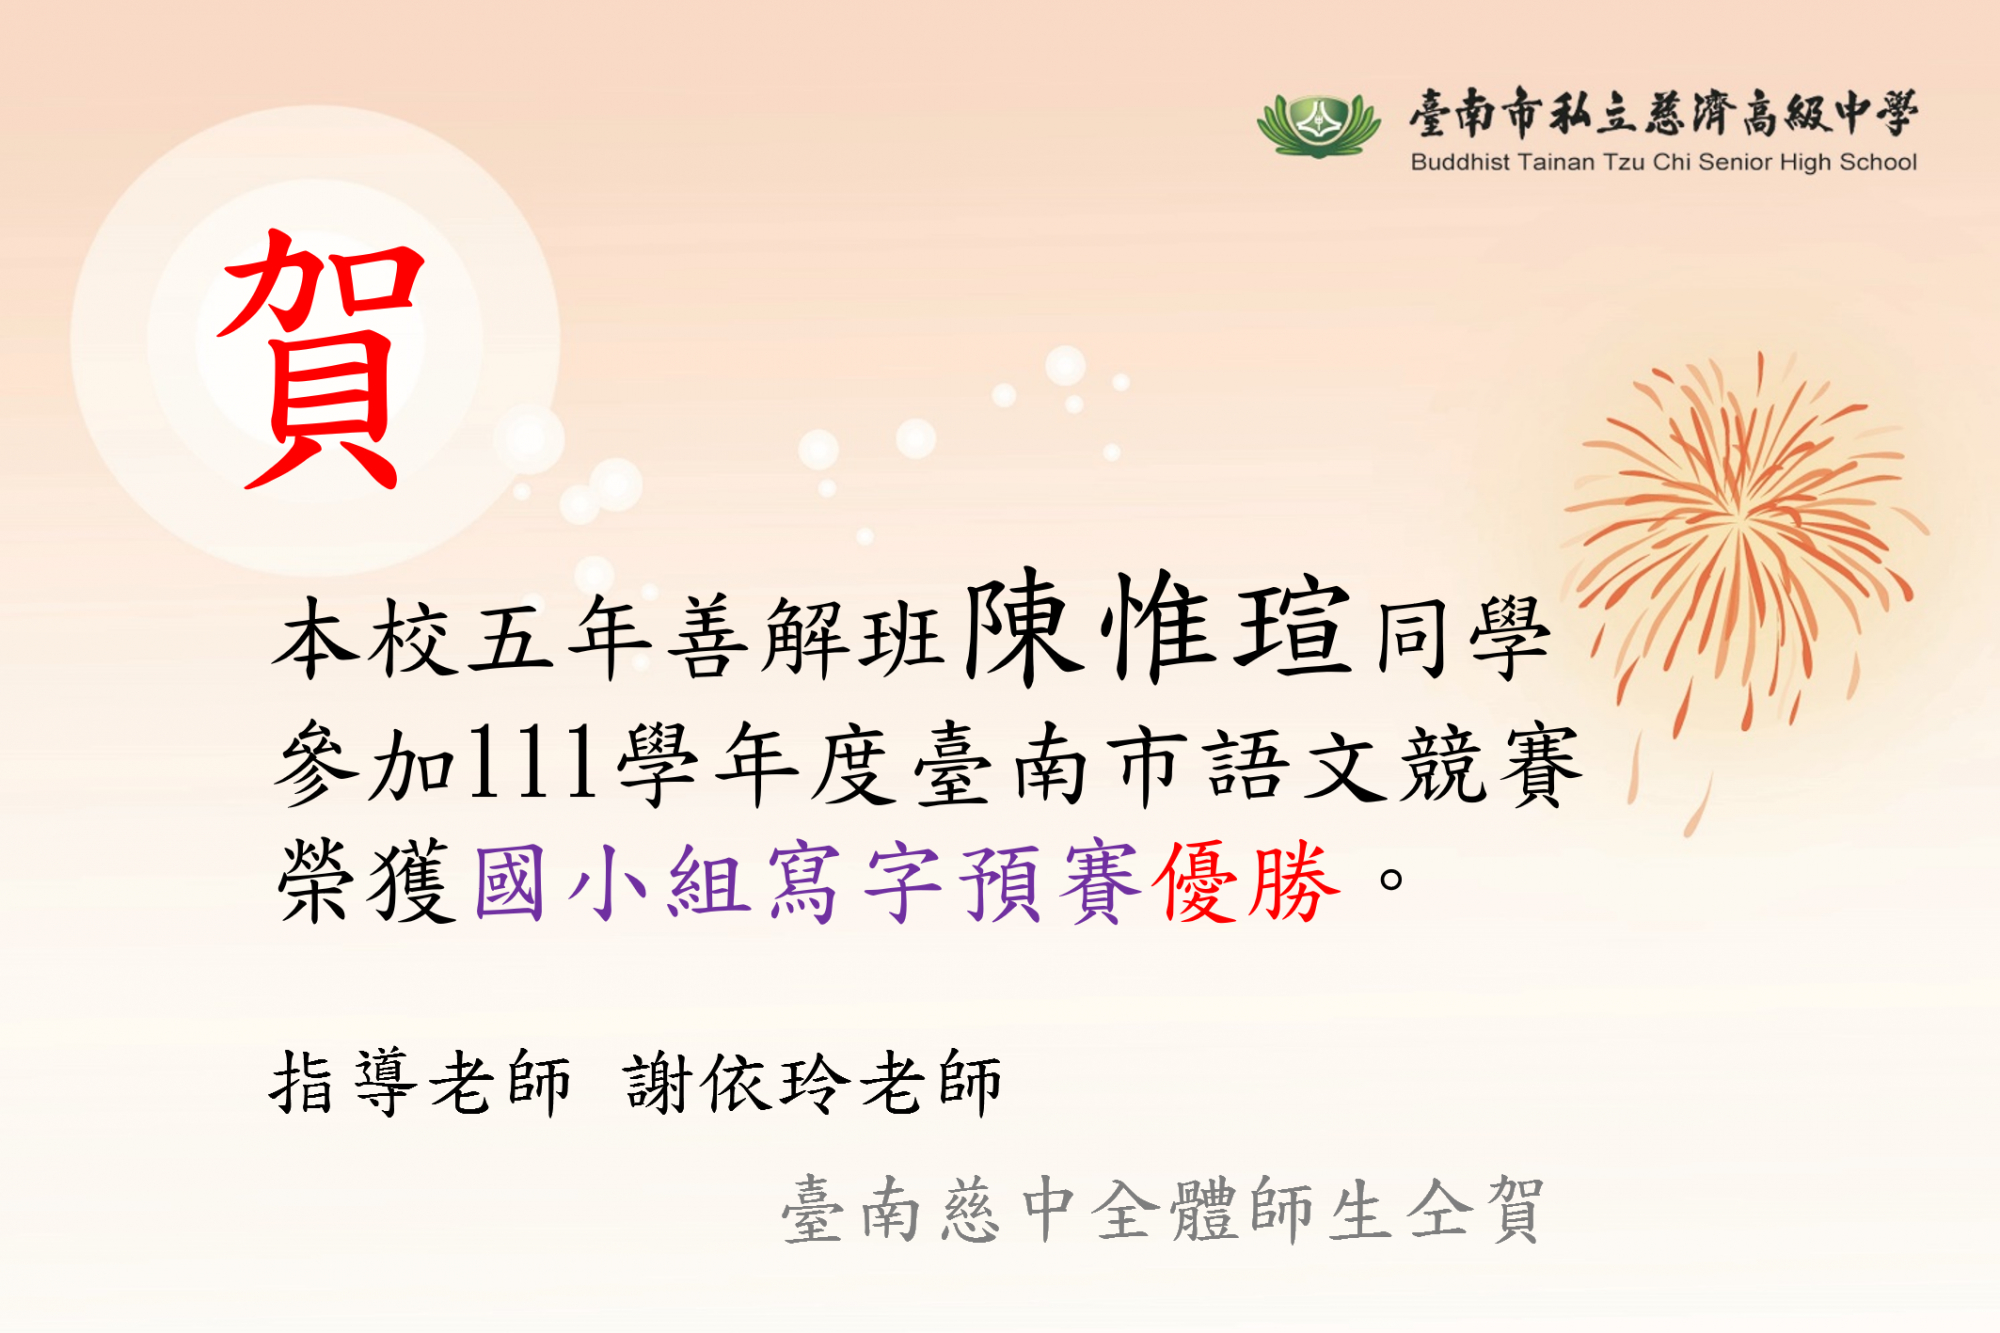 本校五年善解班陳惟瑄同學參加111學年度臺南市語文競賽榮獲國小組寫字預賽優勝。